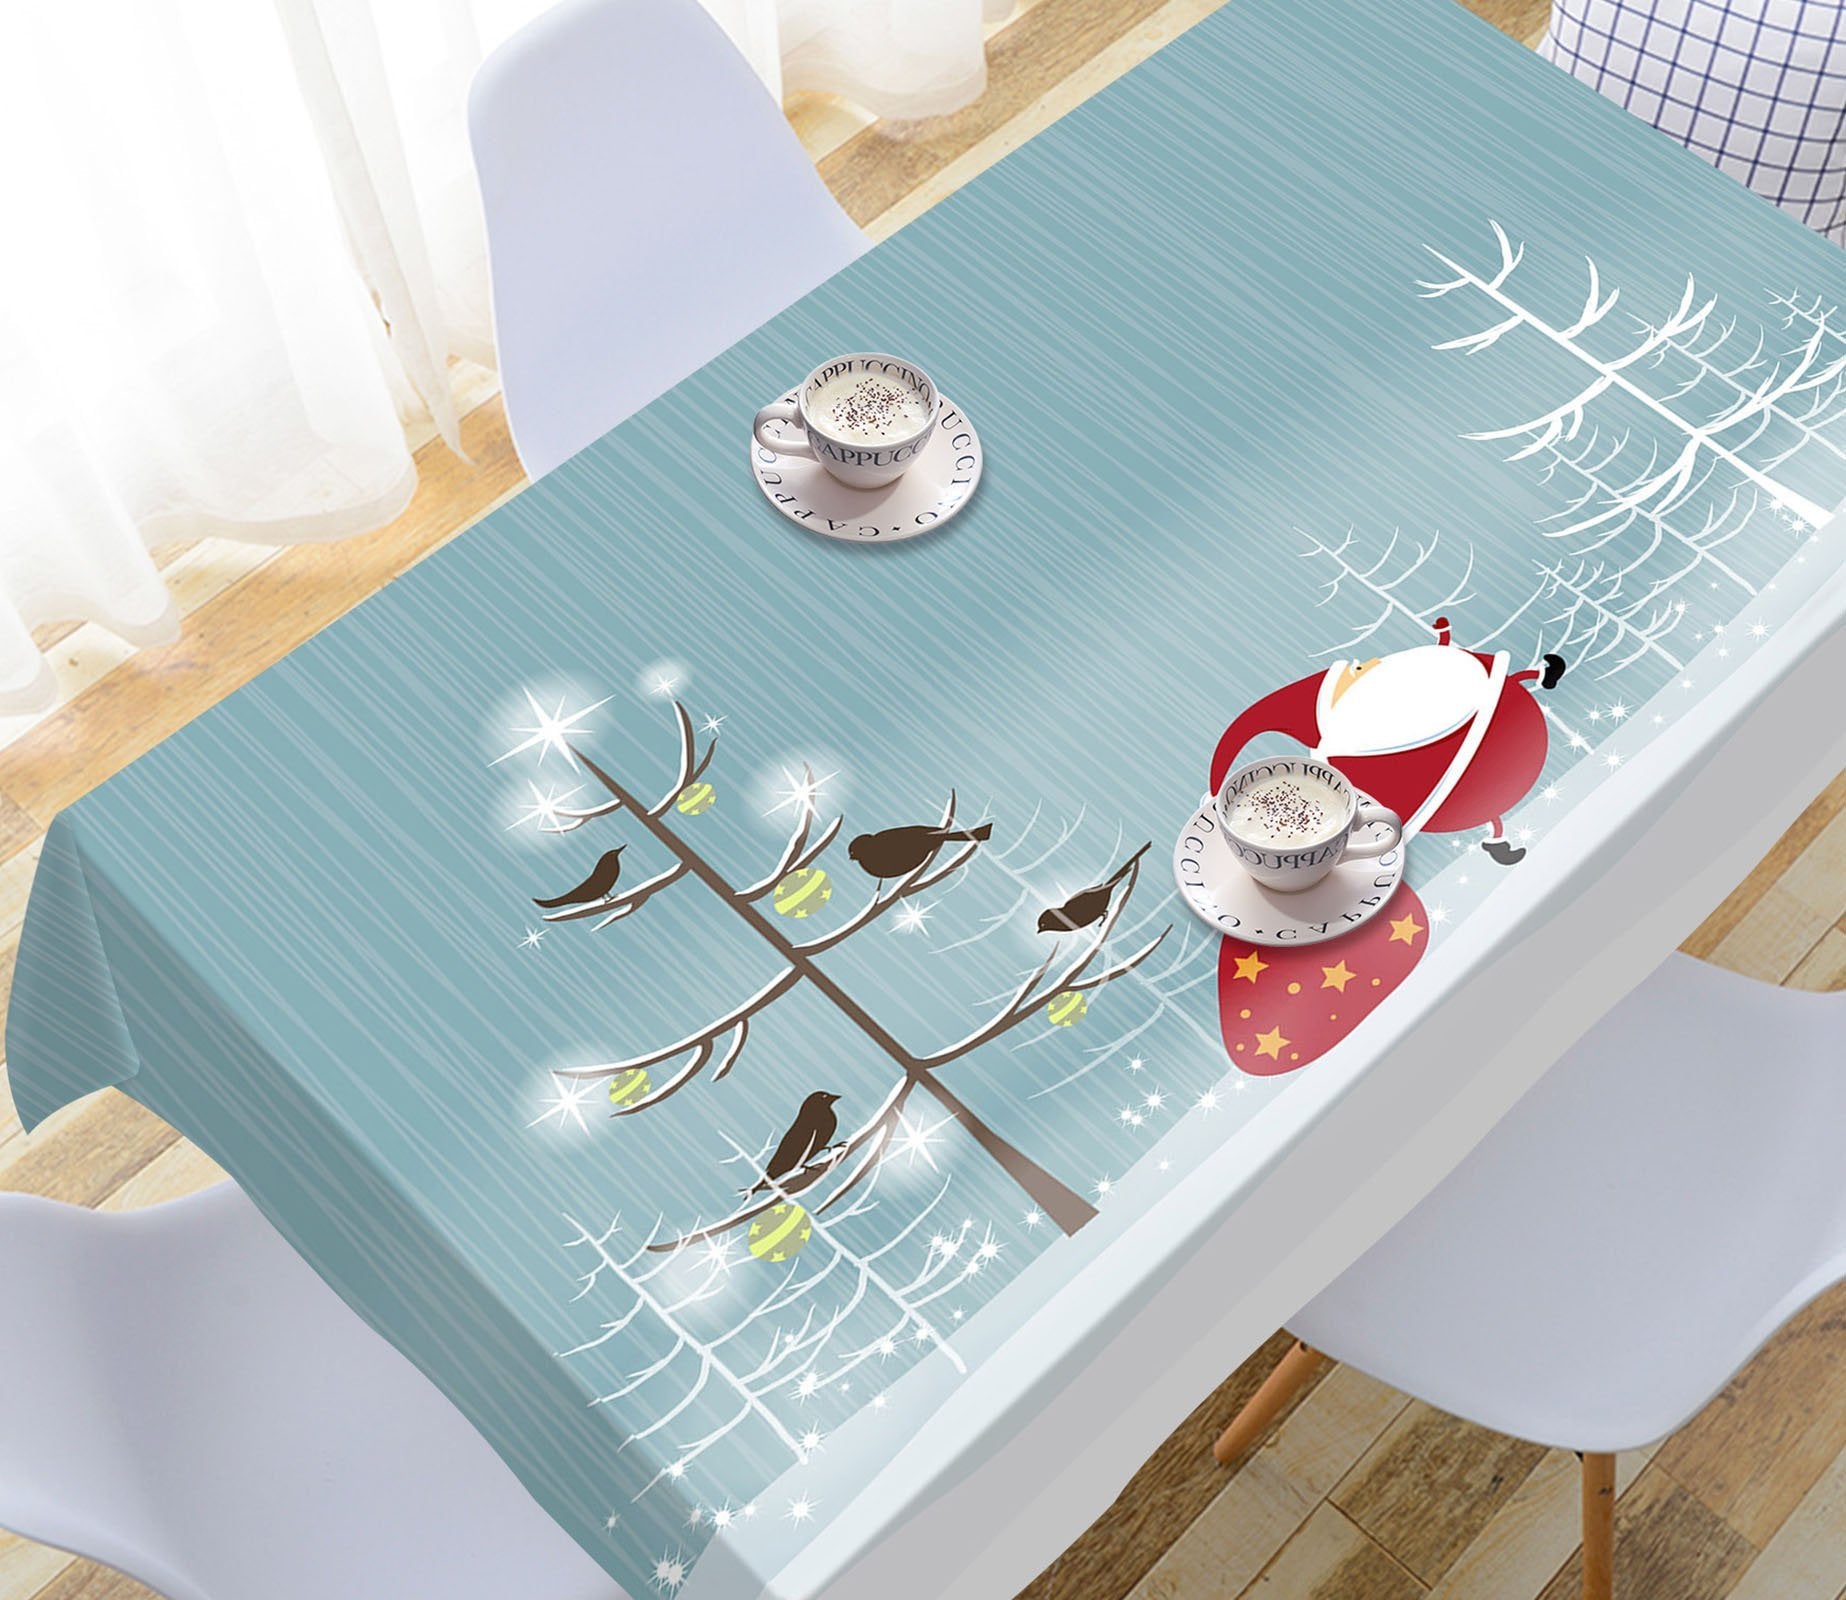 3D Twig Bird Snow 44 Tablecloths Tablecloths AJ Creativity Home 